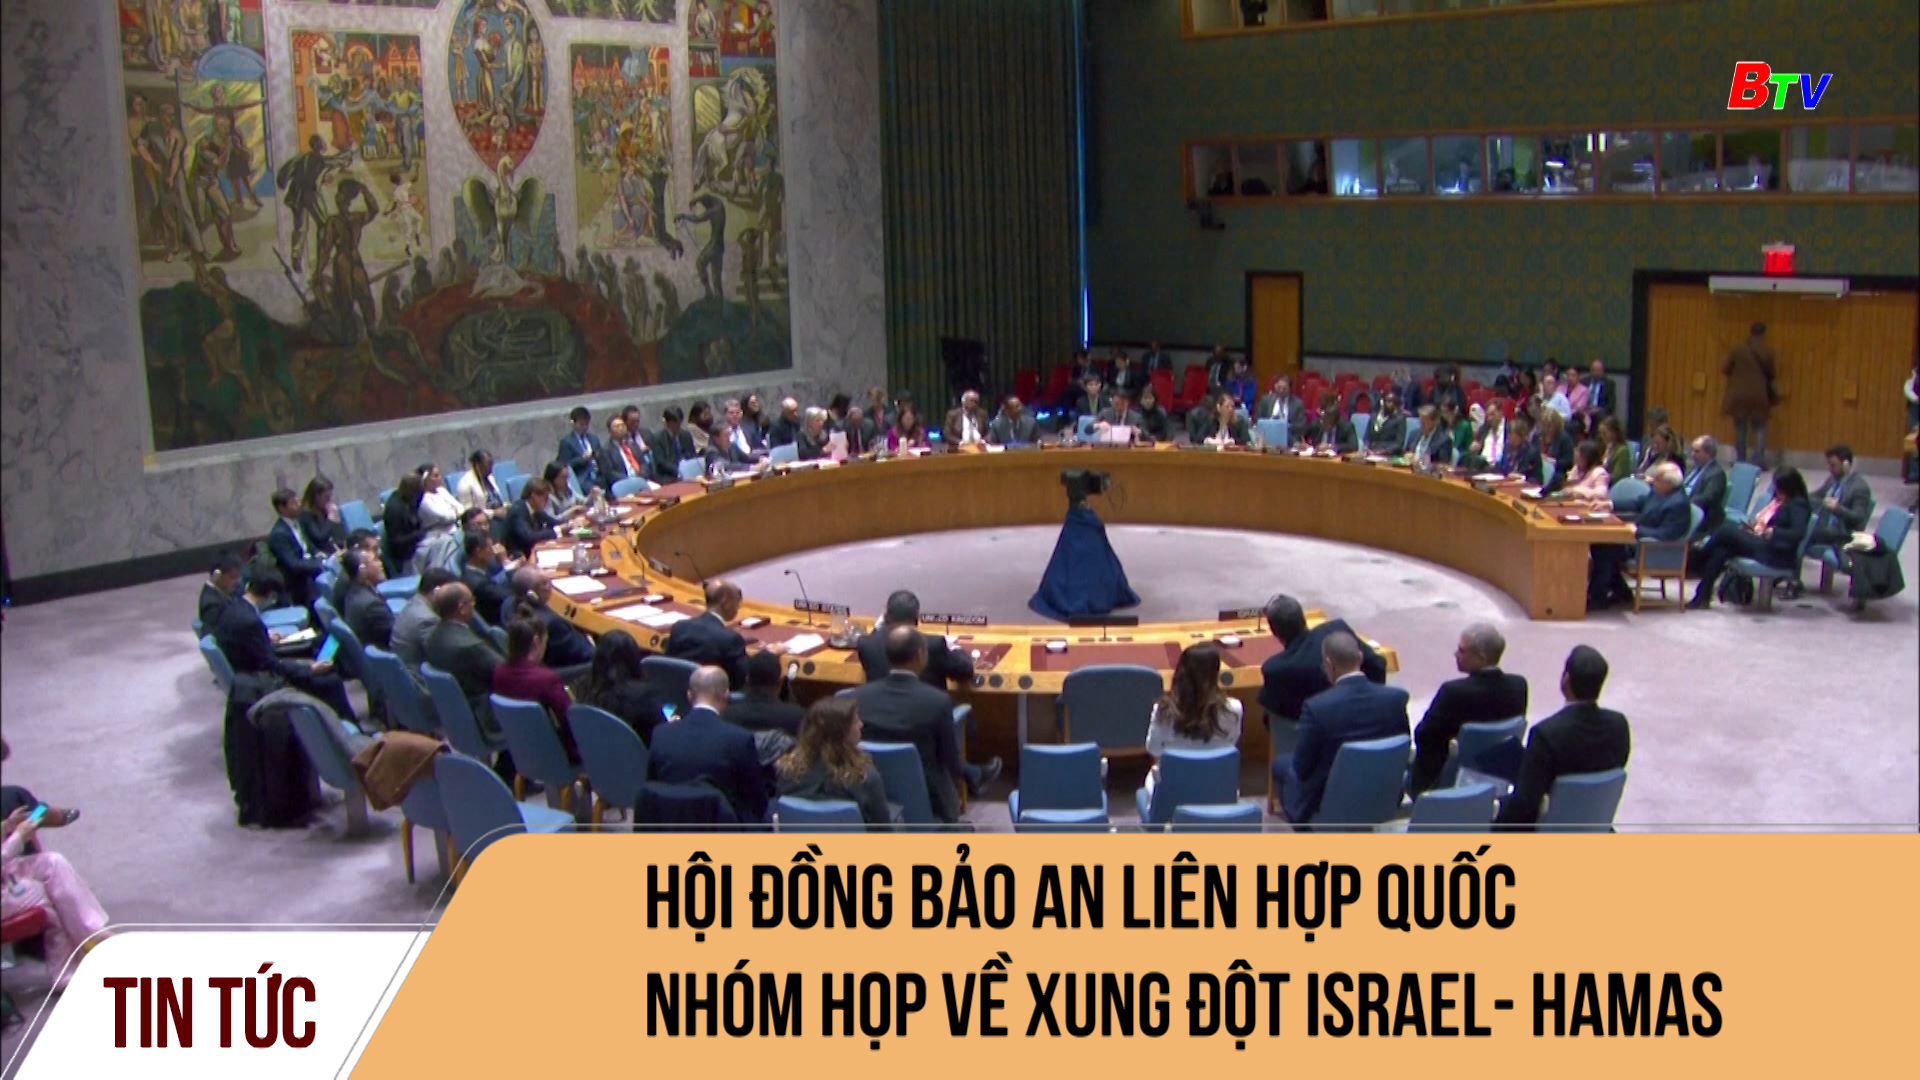 Hội đồng bảo an liên hợp quốc nhóm họp về xung đột Israel-Hamas	